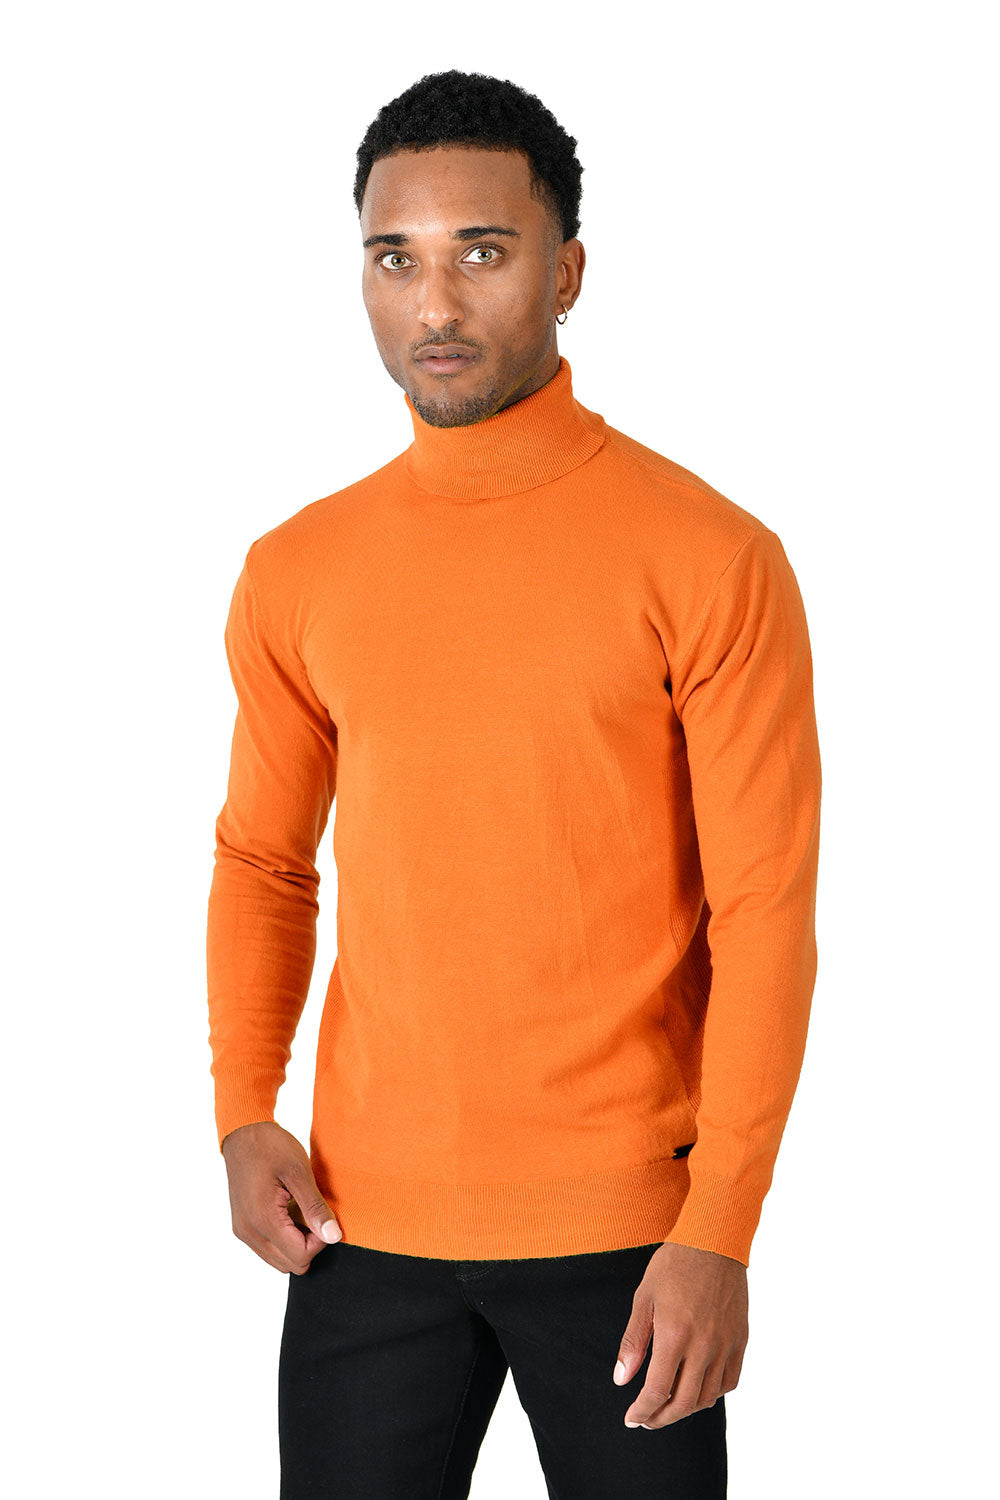 Men's Turtleneck Ribbed Solid Color Basic Sweater LS2100 Orange